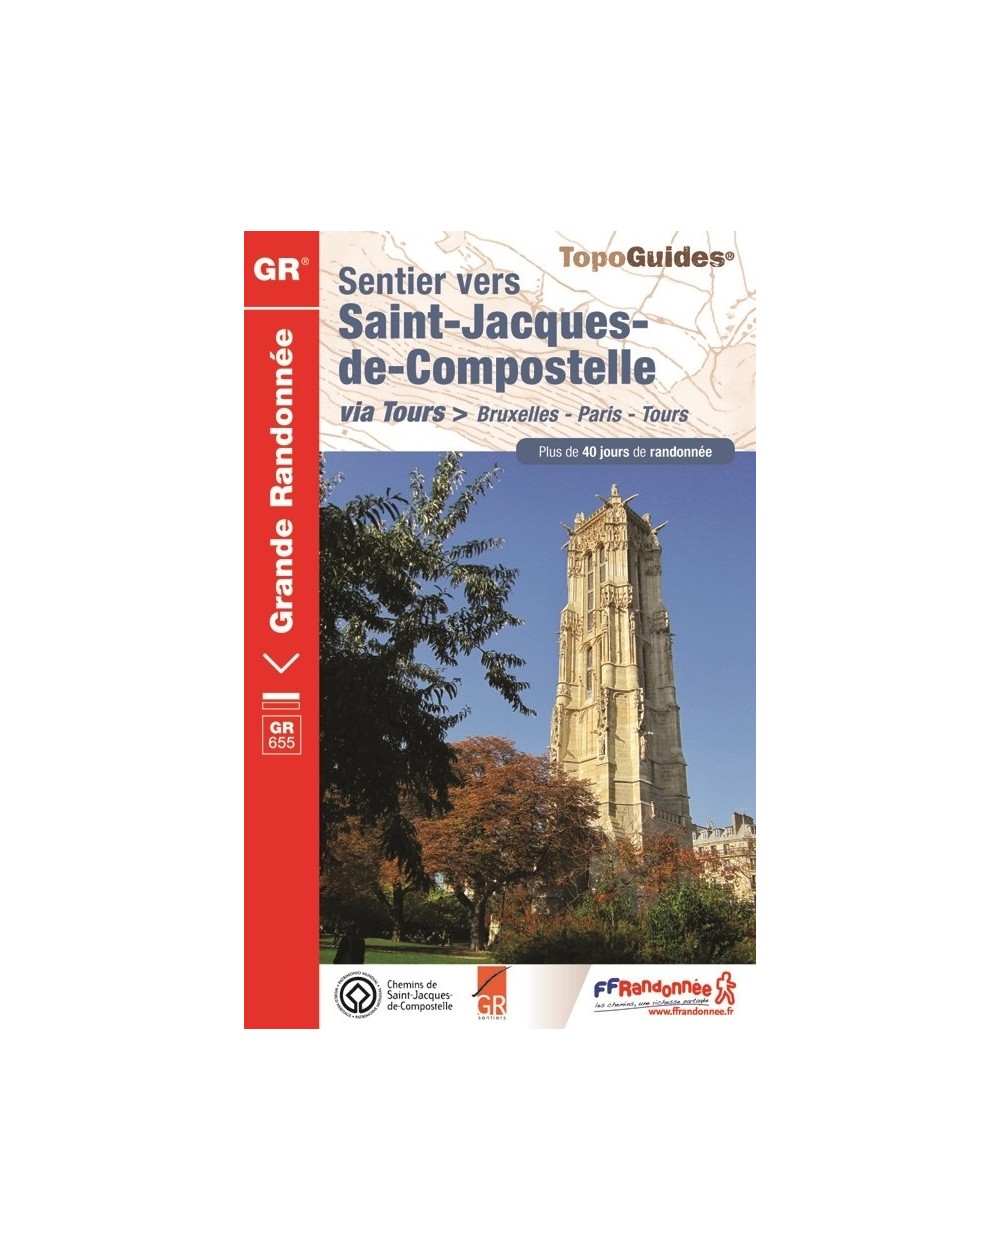 St-Jacques-de-Compostelle via Tours | Topoguide FFRP